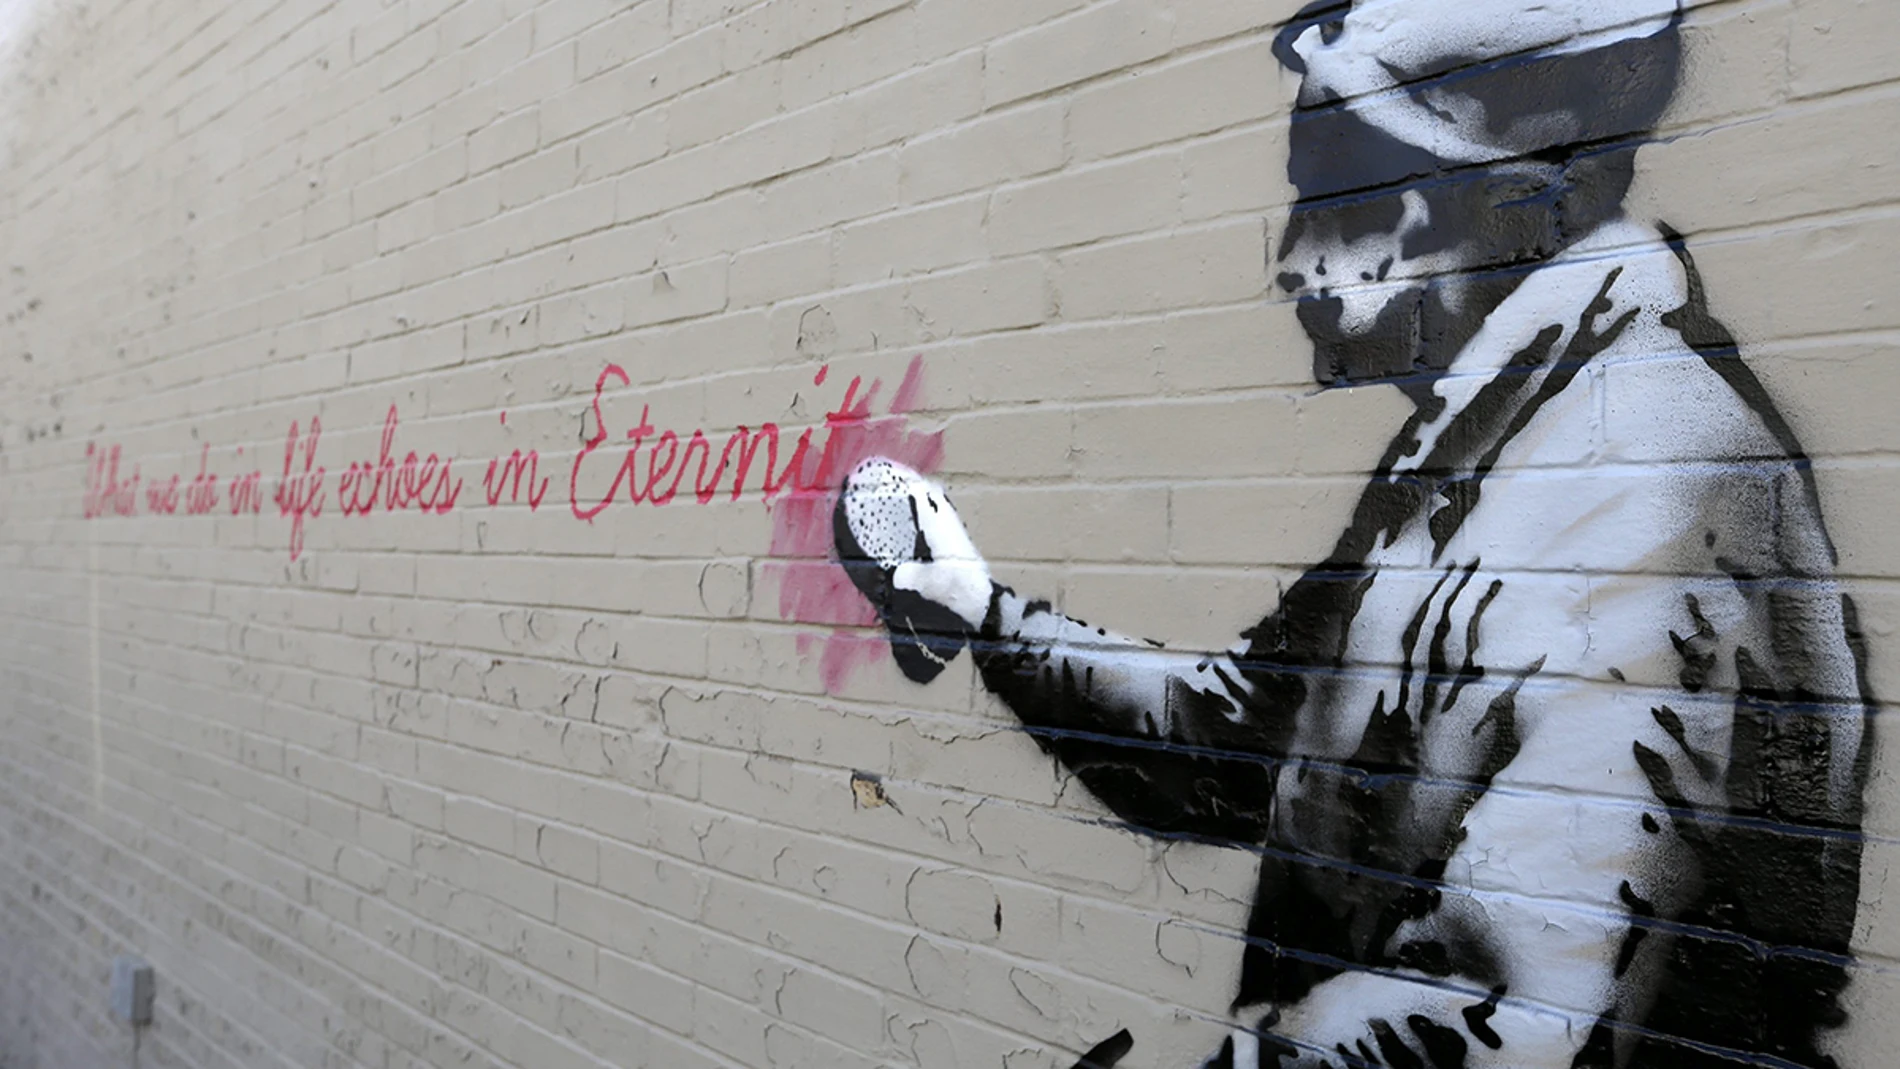 La Policía de Nueva York busca al grafitero Bansky por vandalismo